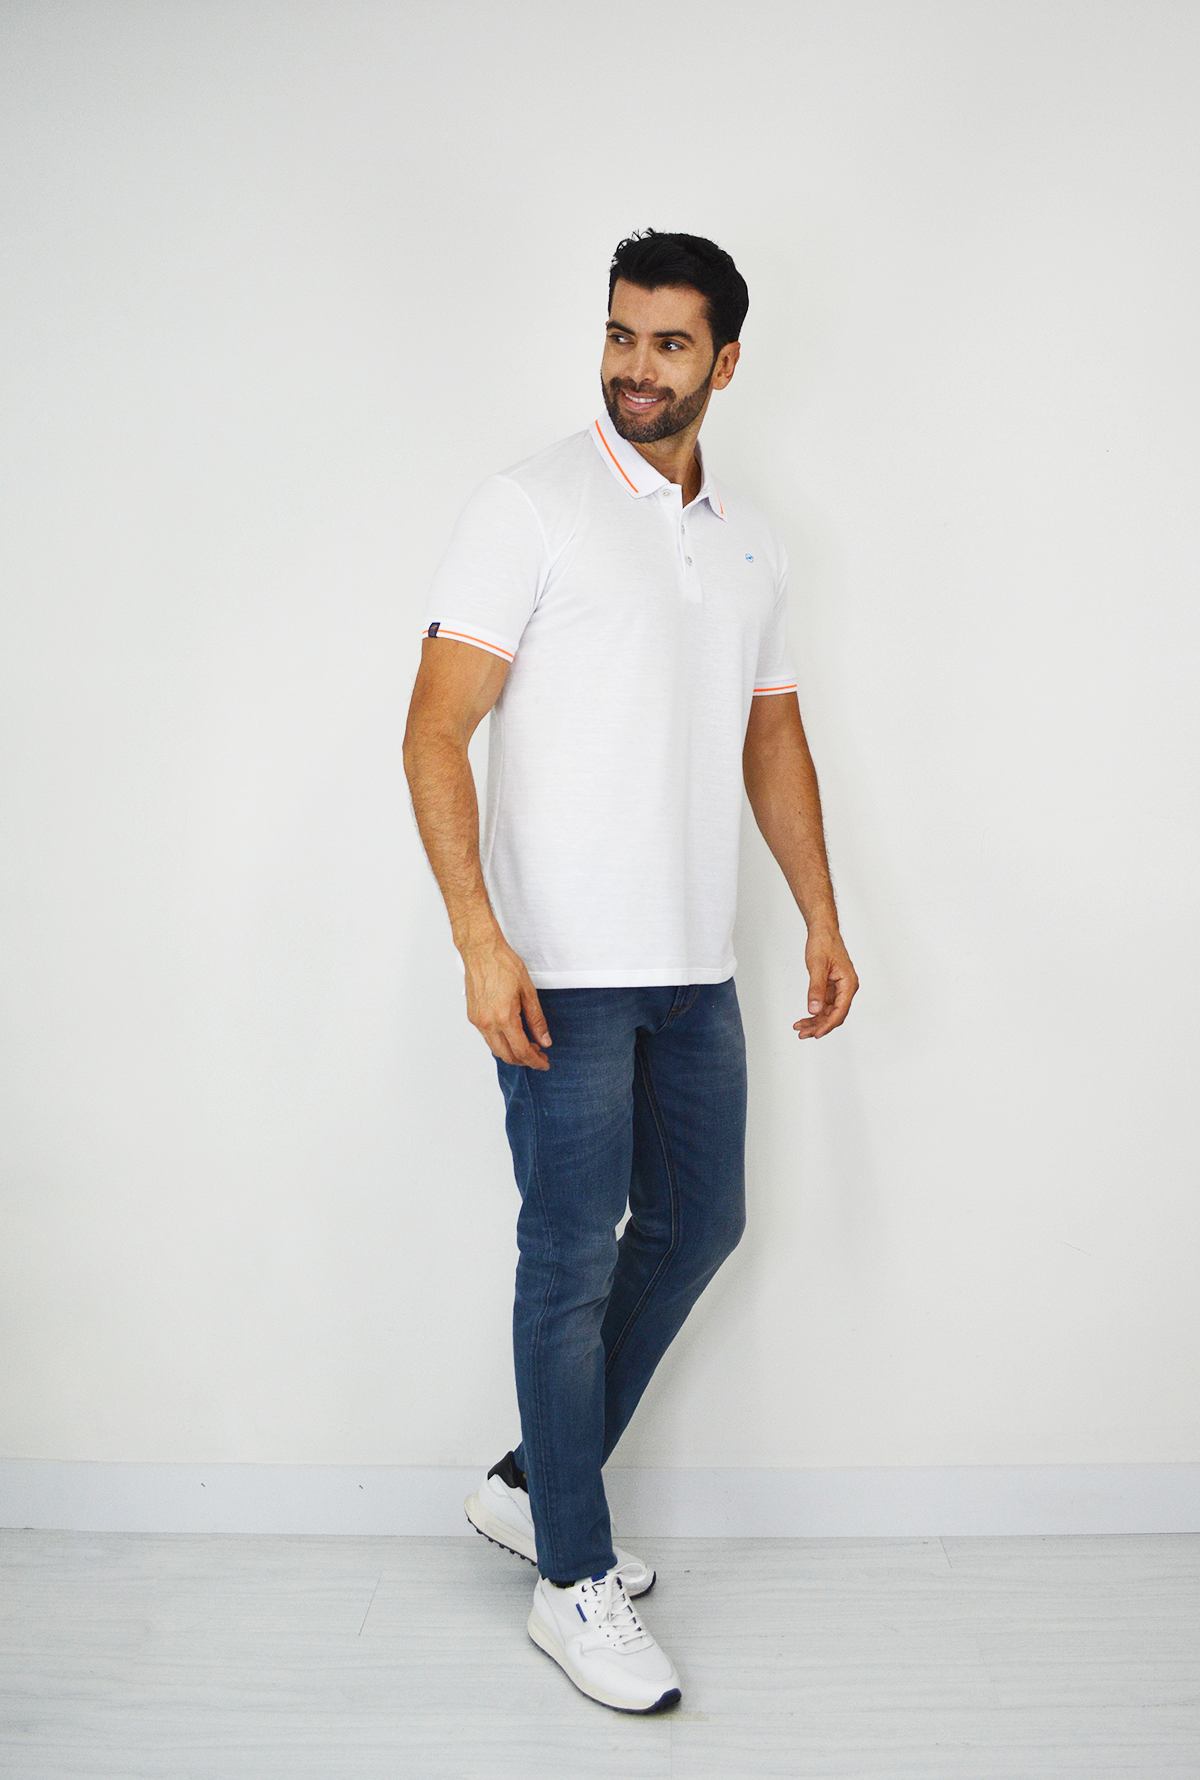 Camiseta Tipo Polo Blanca para  Hombre CP028-3